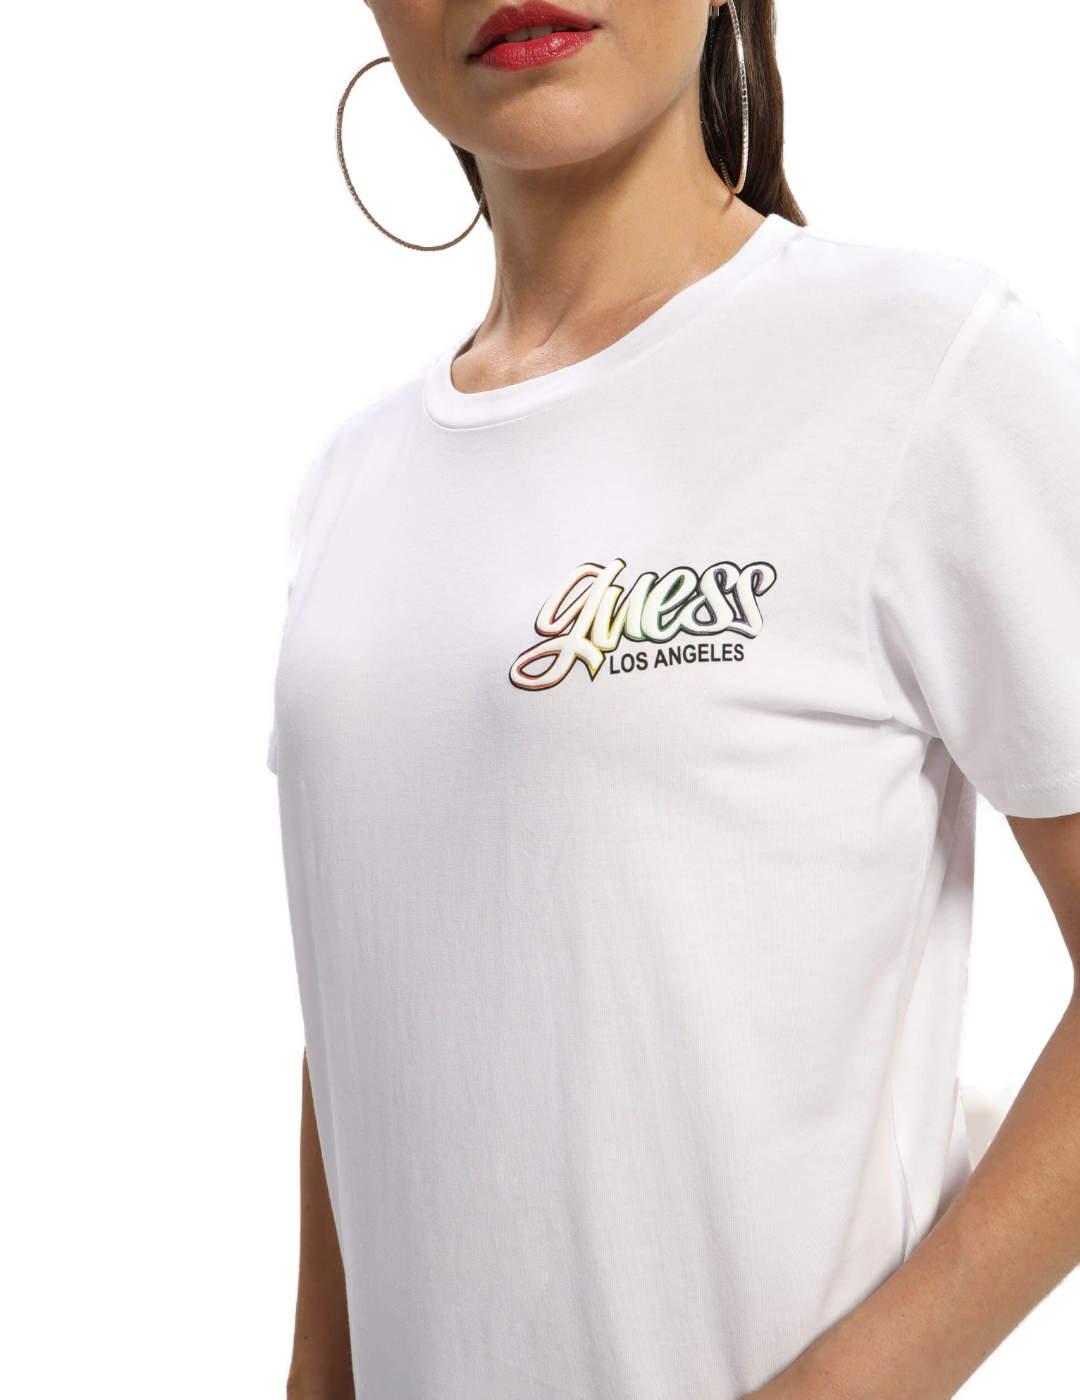 Camiseta Guess Rainbow blanco estampado multicolor de mujer